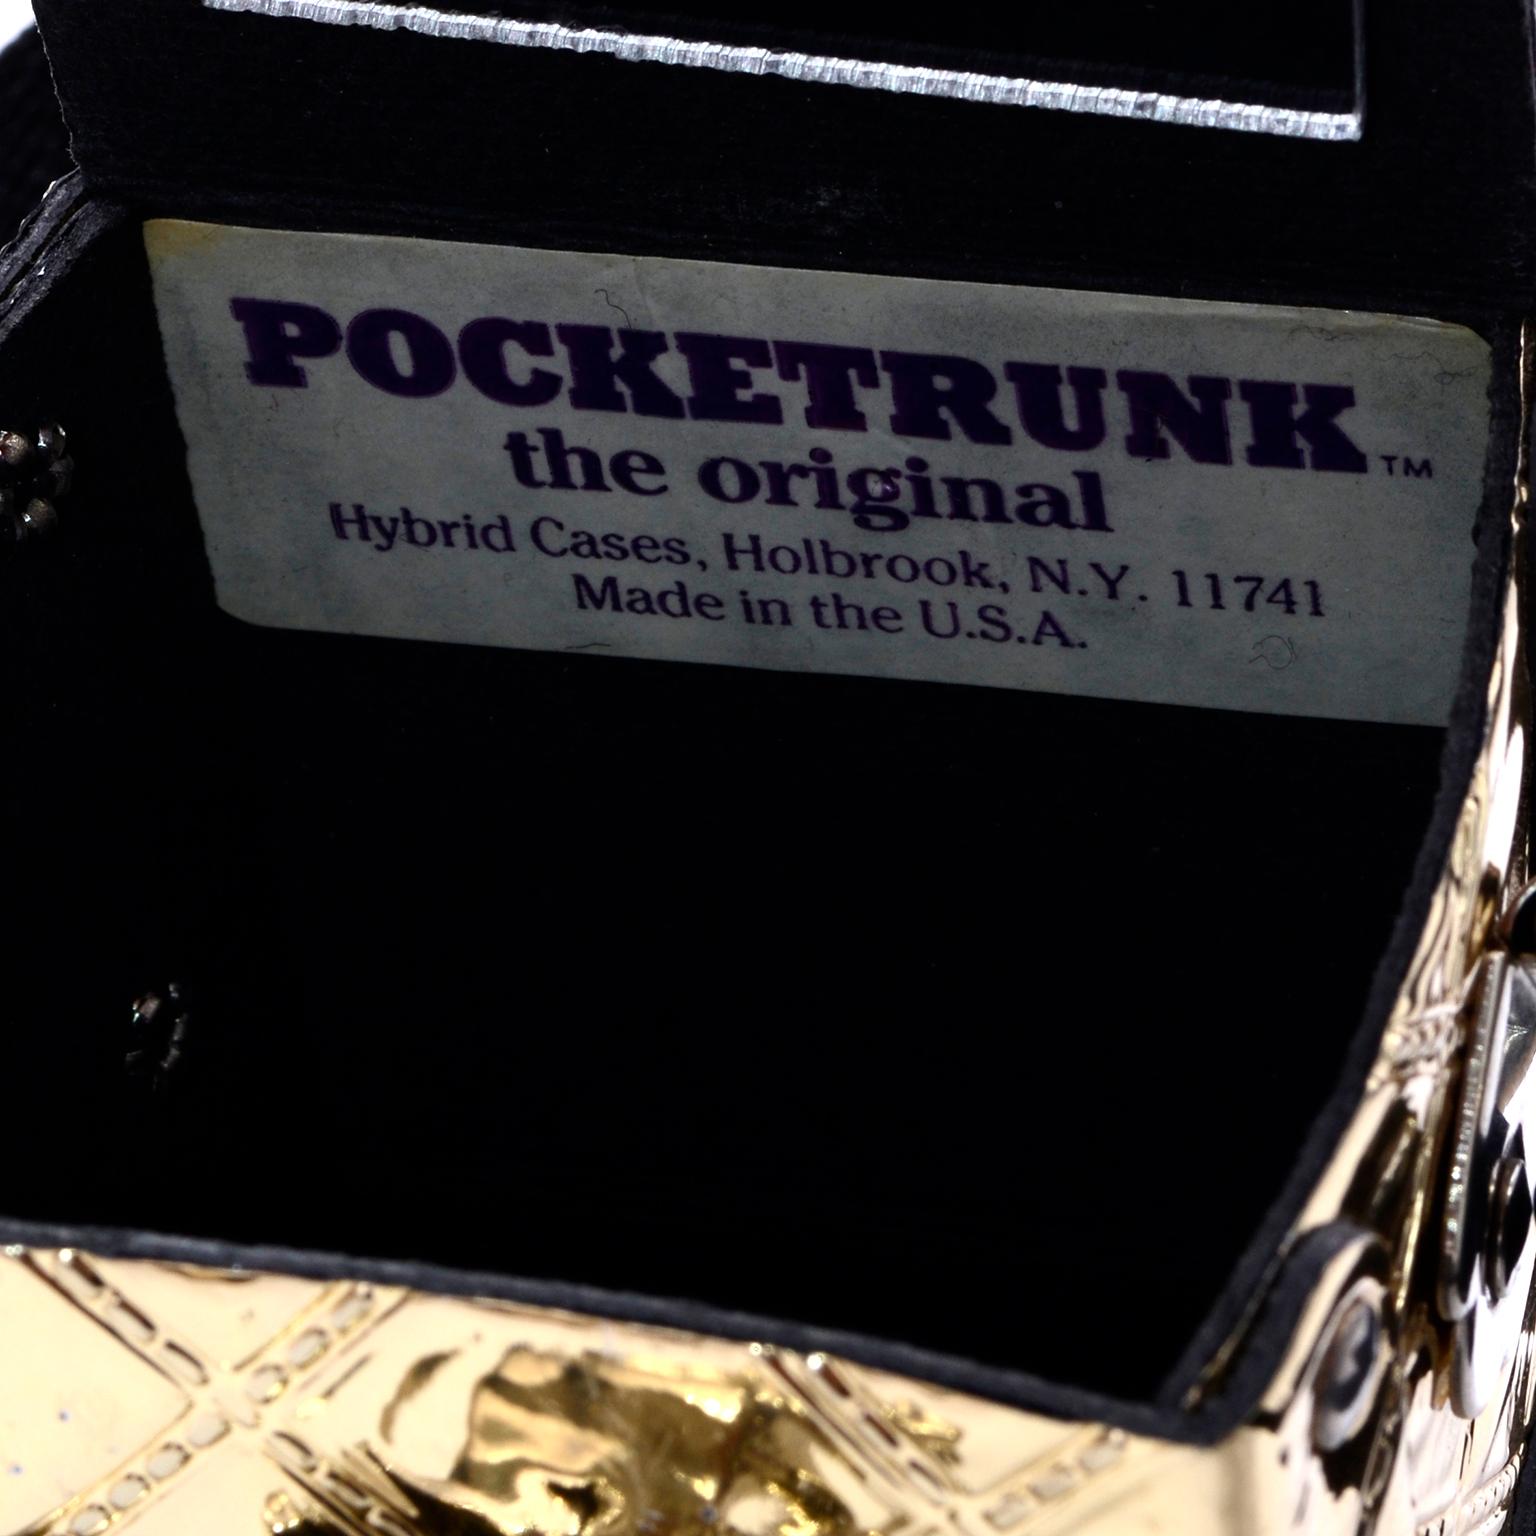 11741 made in the USA bag N.Y Vintage Pocketrunk the original hybrid Cases Holbrook